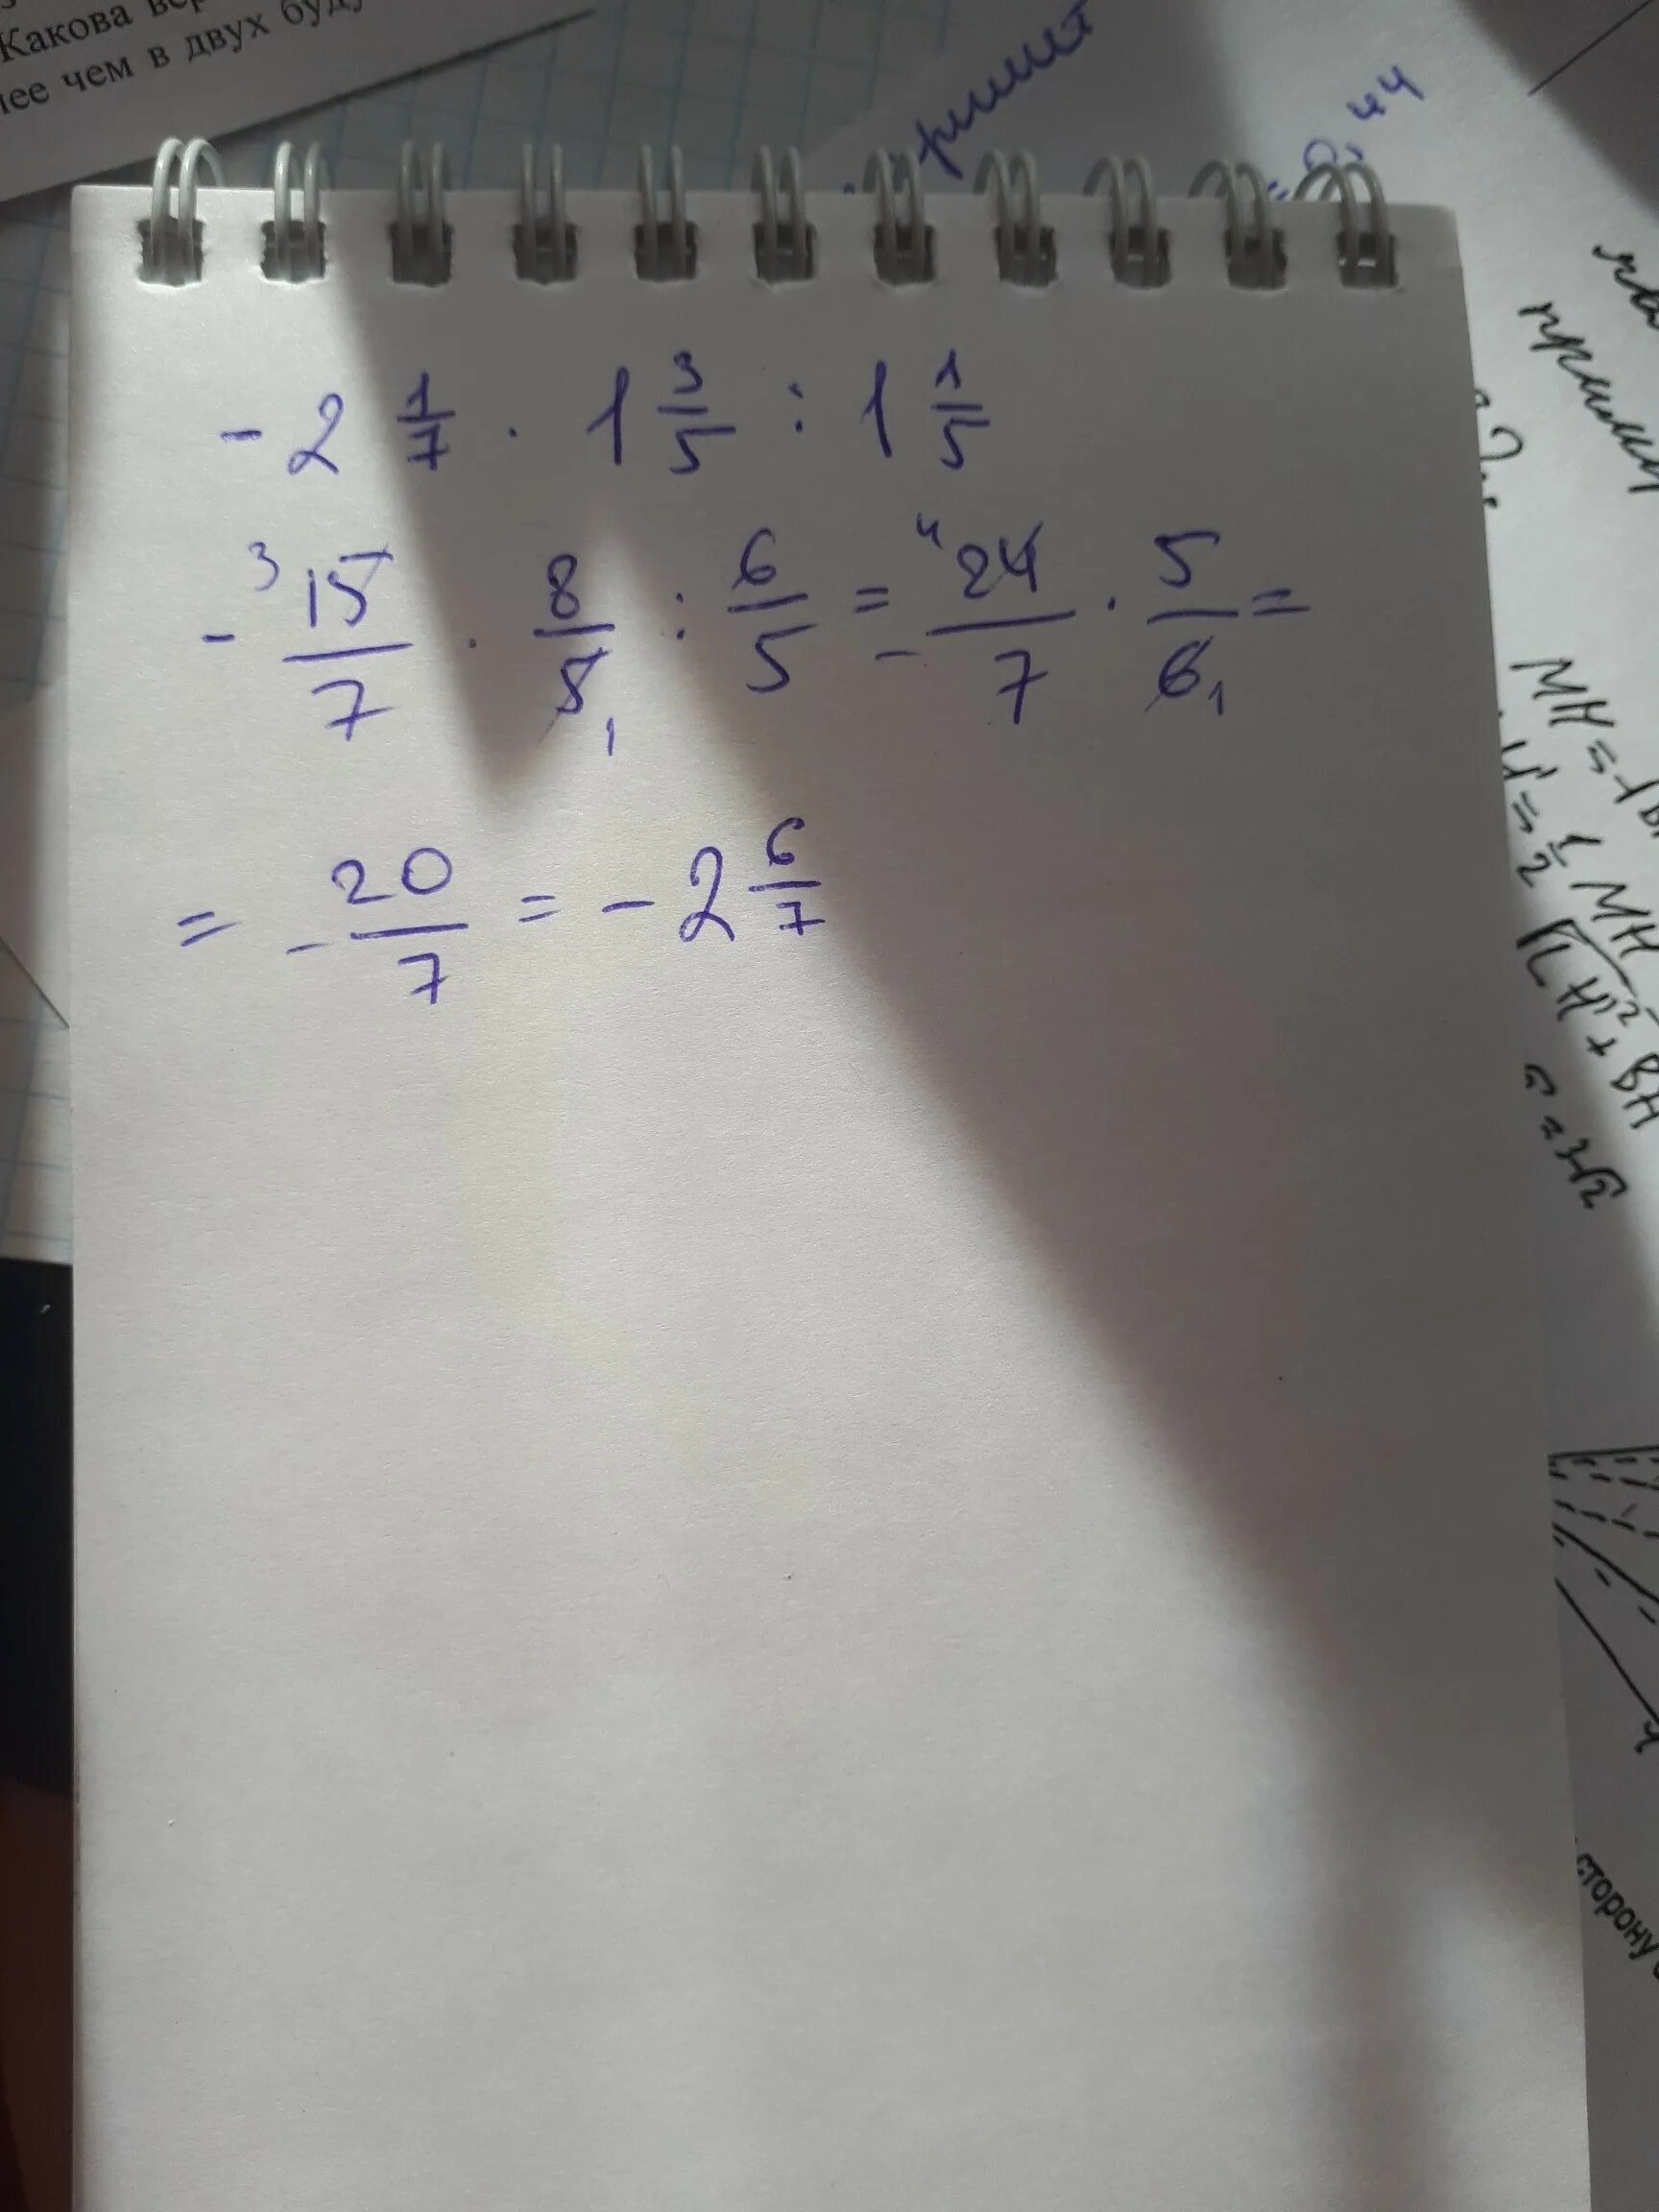 Вычислите 3 14 умножить на 7. 2 Целых 1/3 умножить на 7 целых 2/3. 5 Целых 2/5 умножить на 3 целых 1/3. 1 Целая 1/3 умножить на 2 целых 2/7. 5 Целых 2/3 разделить на 1 целую 1/3 - 1 целая 7/12 умножить на.